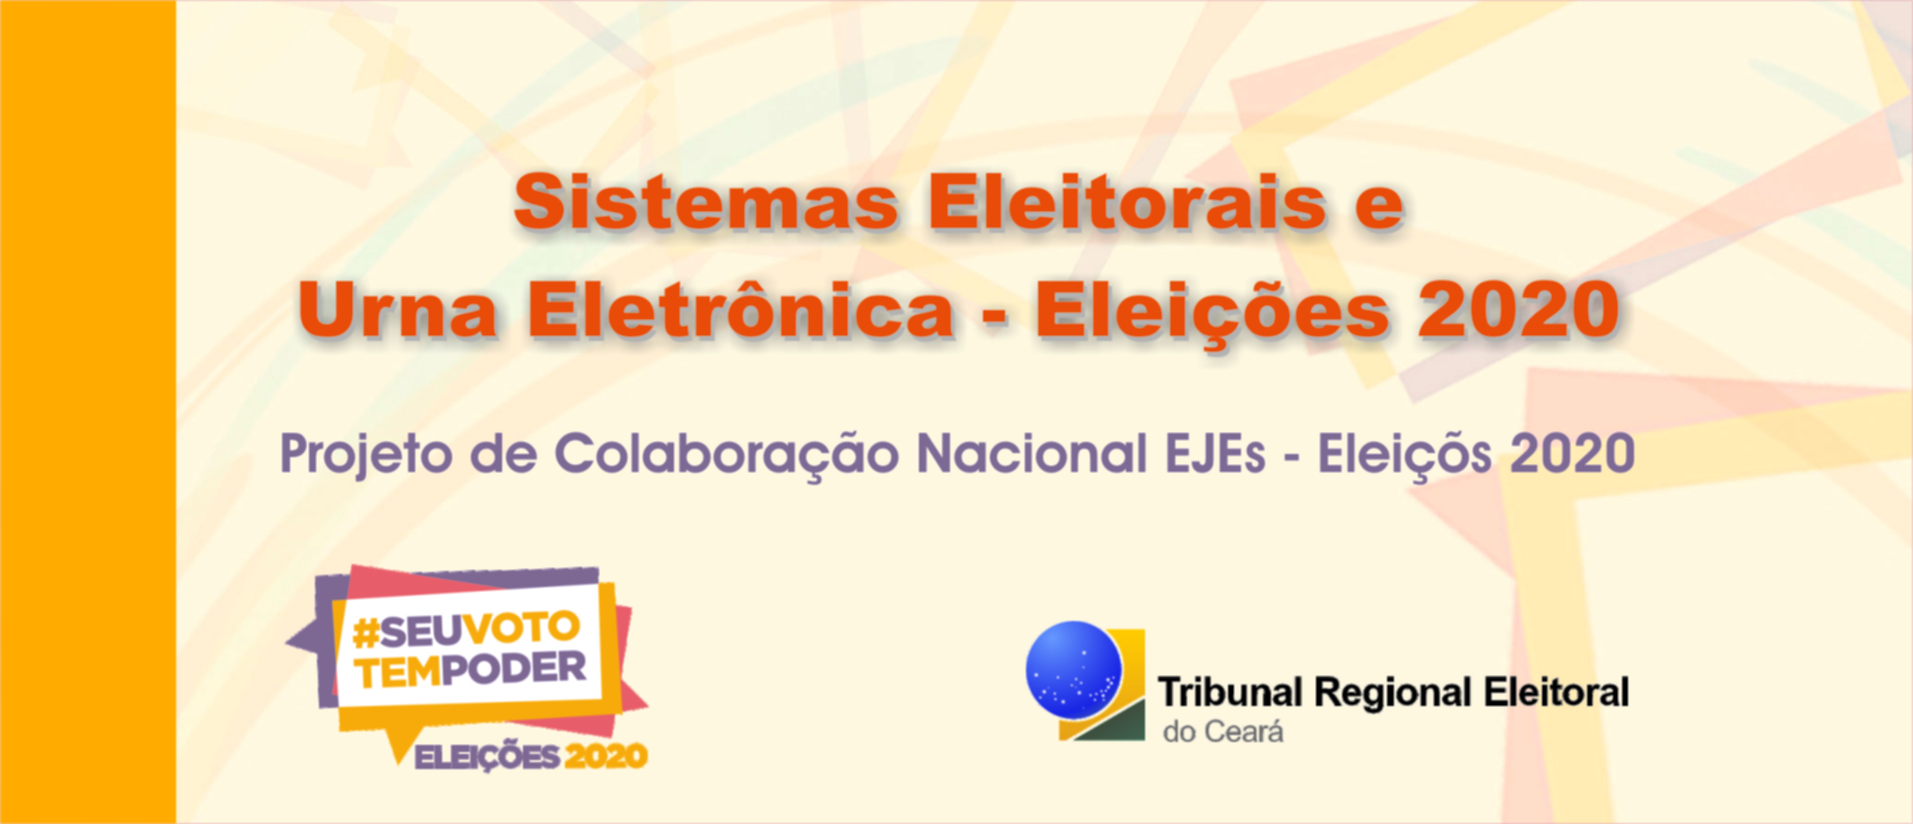 Banner Sistemas Eleitorais e Urna Eletrônica - Eleições 2020